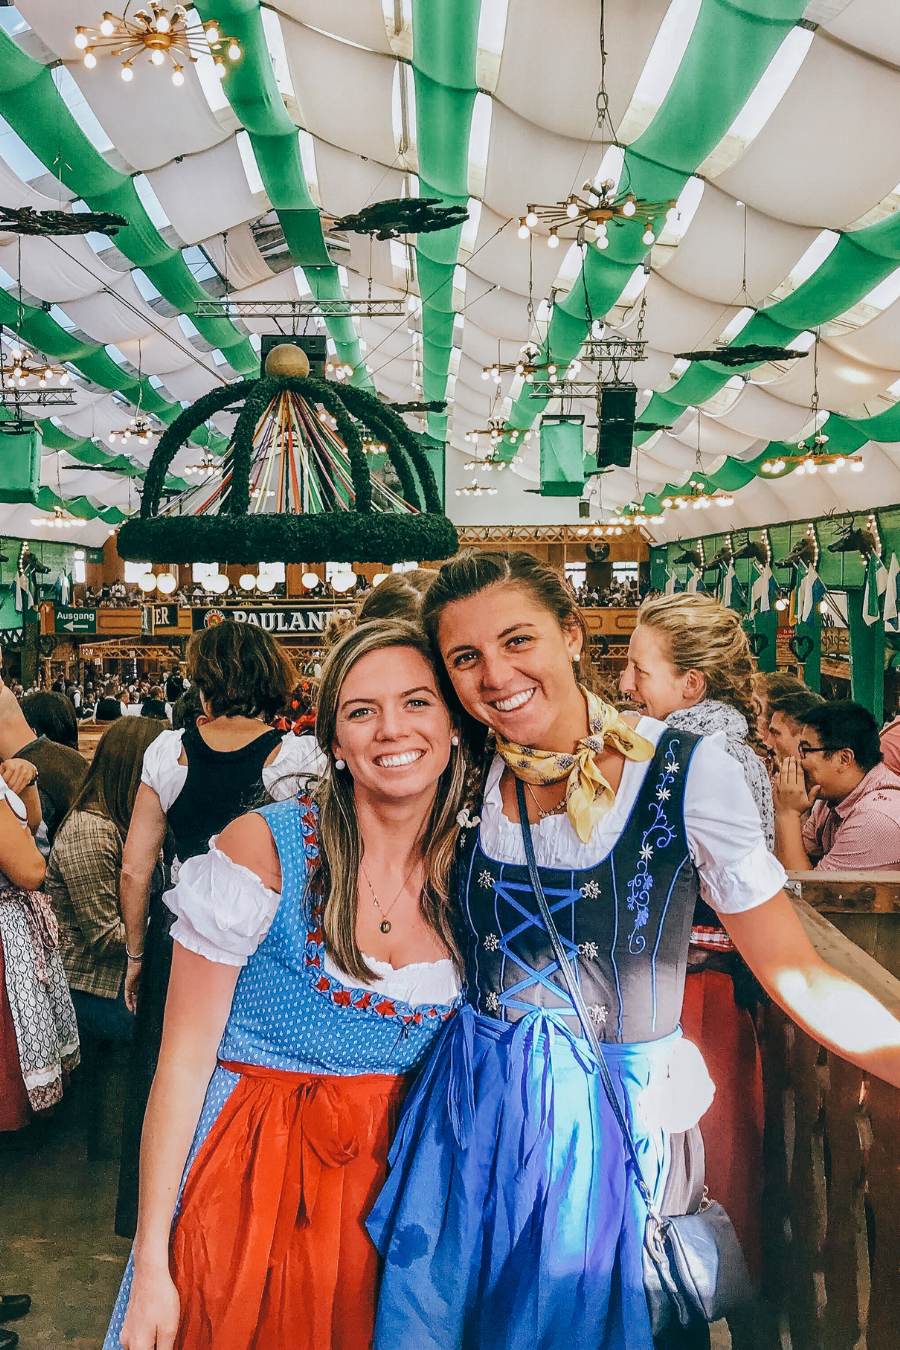 What should women wear to Oktoberfest